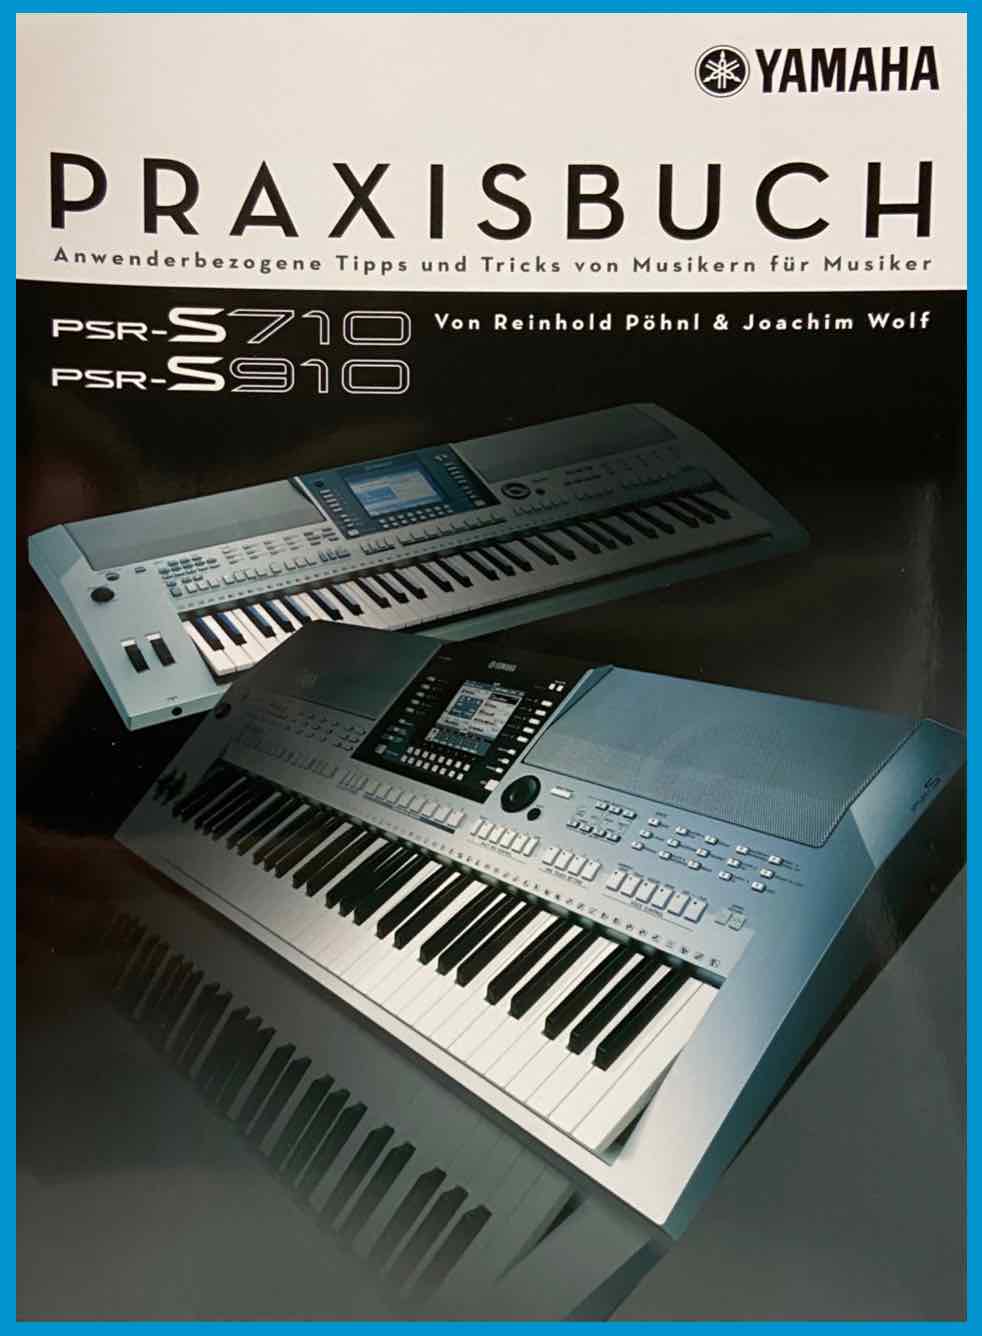 PSR-S910 / PSR-S710 Praxisbuch1